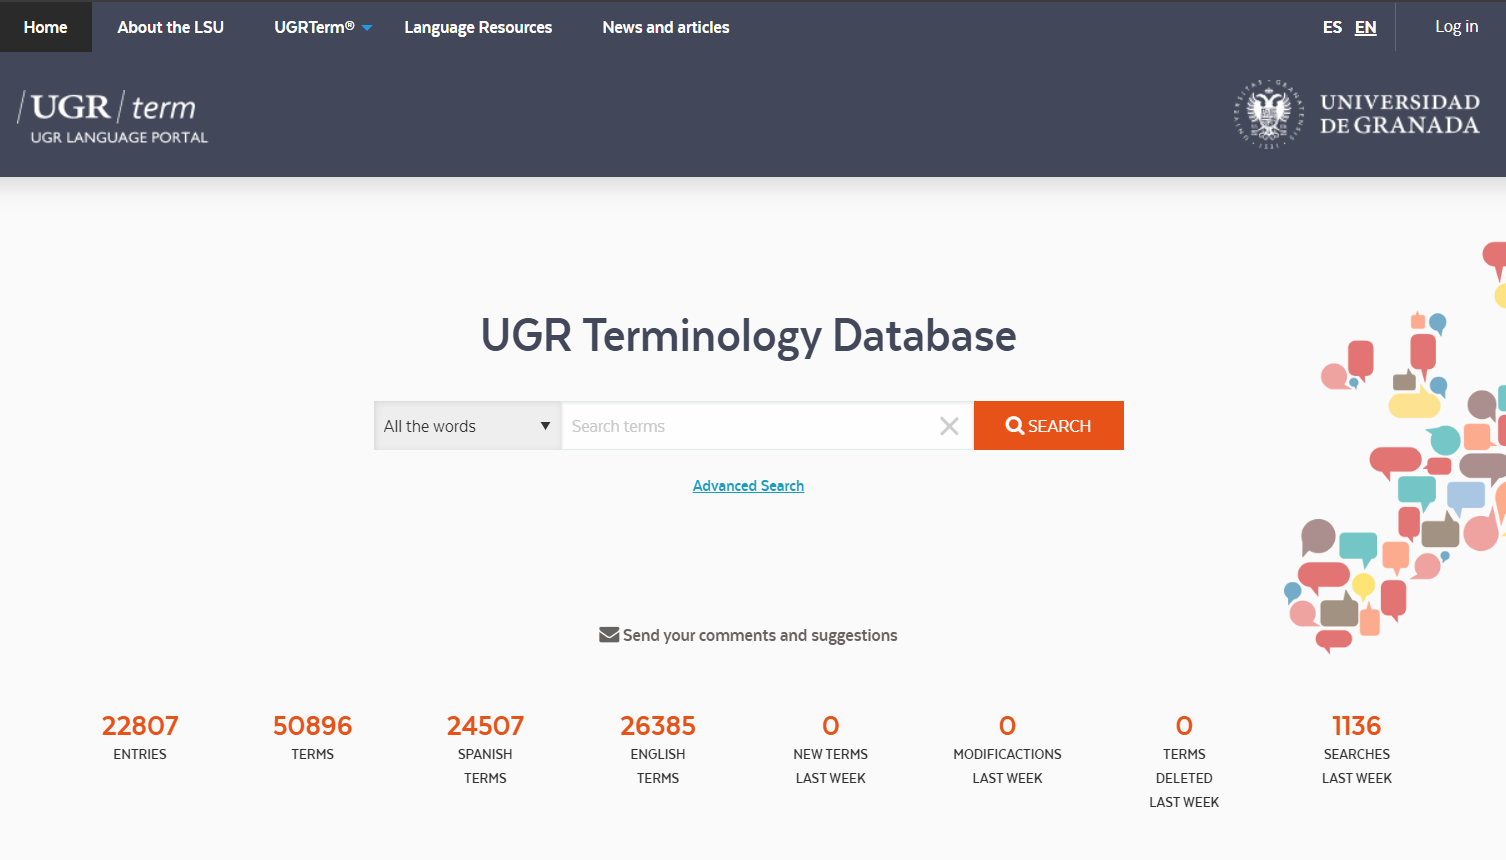 The UGRTerm home page https://ugrterm.ugr.es/en/